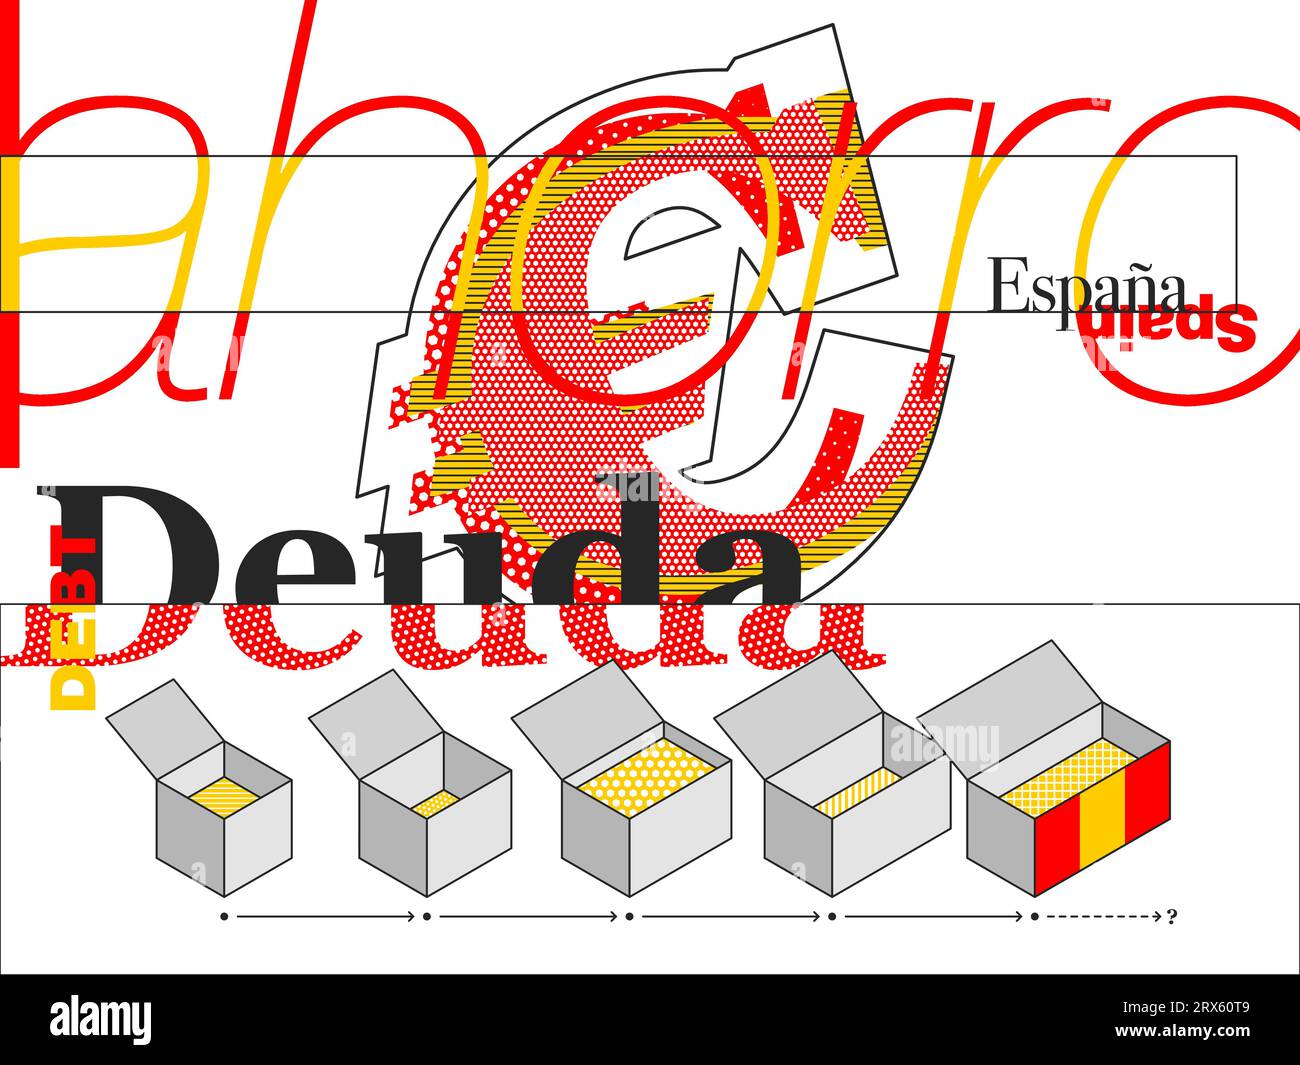 Illustrazione che cattura il debito nazionale spagnolo, con simboli e motivi minimalisti. Illustrazione Vettoriale